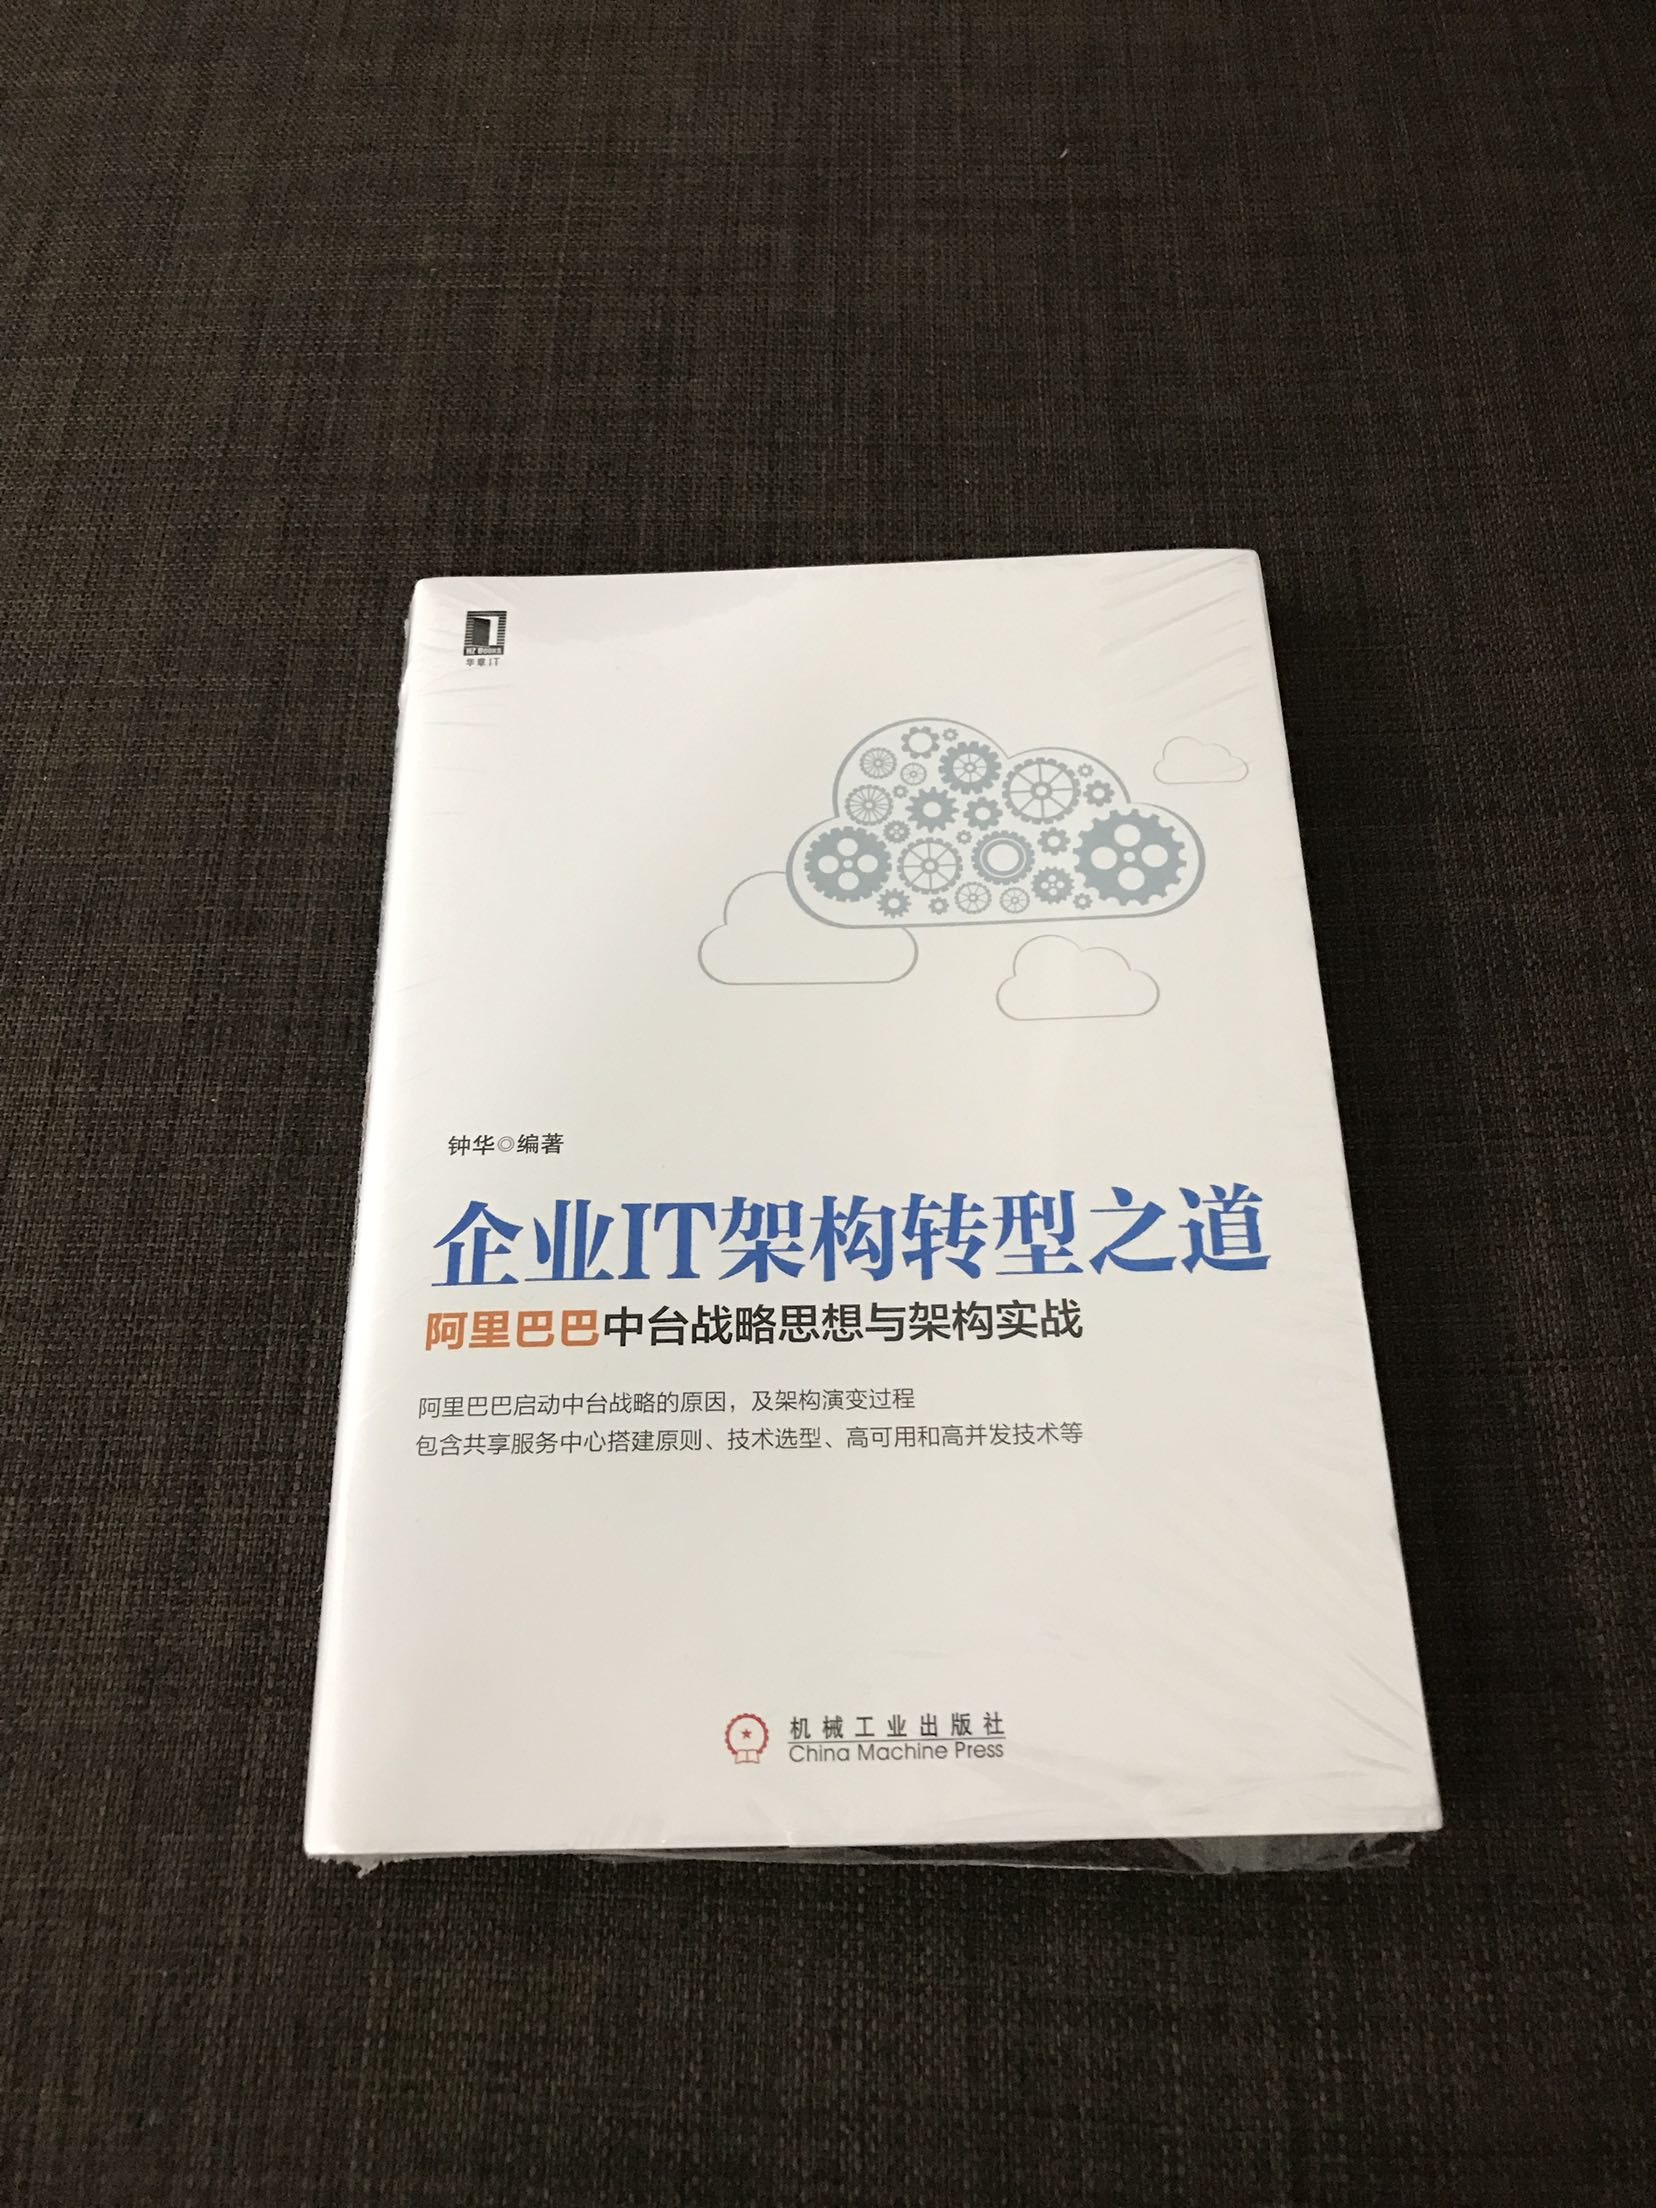 一本不错的描述阿里巴巴IT架构转型的书，对架构演进介绍得比较详尽，推荐之。